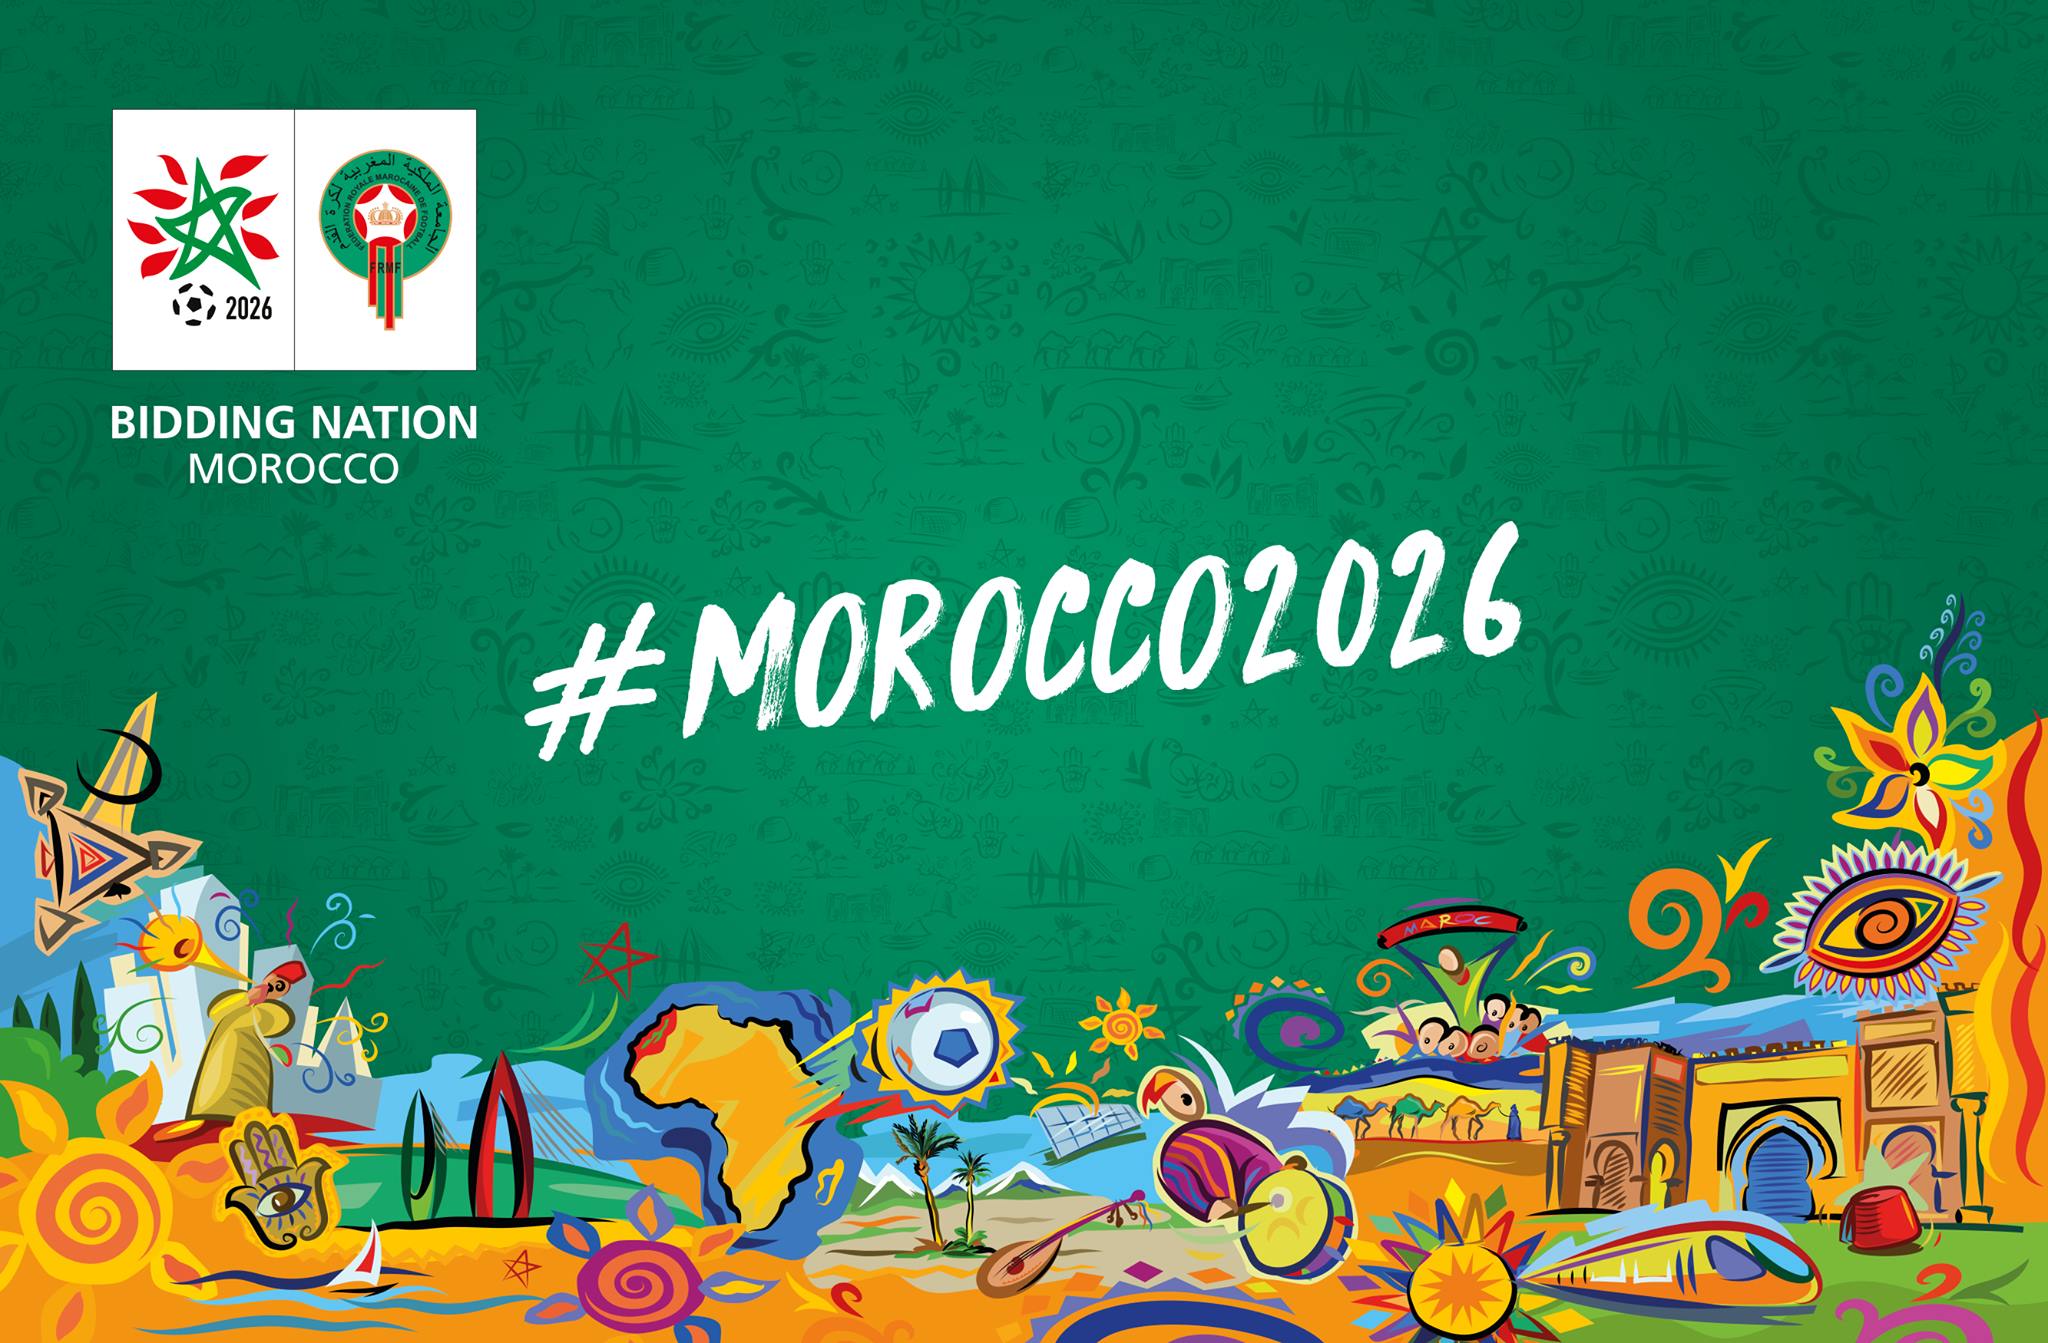 مونديال 2026 - مولاي حفيظ العلمي: المغرب بلد يحترم قواعد اللعب